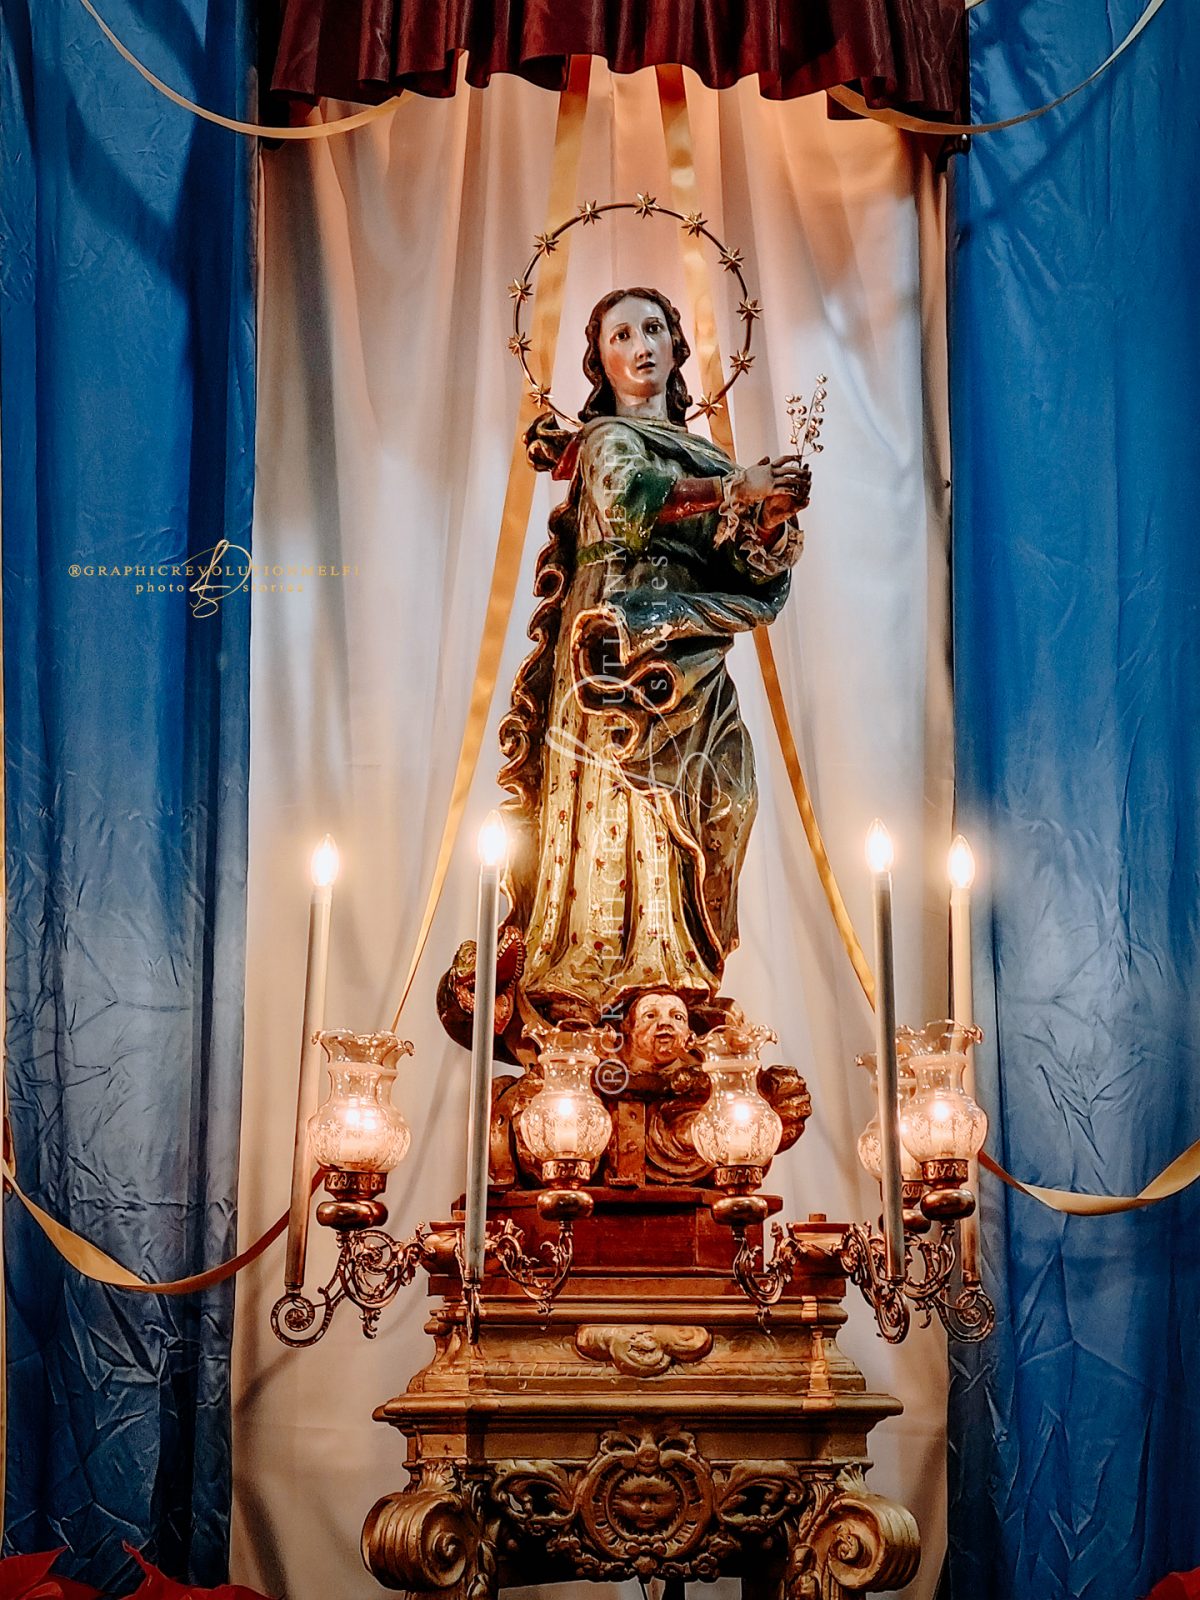 8 Dicembre l'Immacolata e la tradizione delle Panedduzze di Melfi santa maria ad nives basilicata riti arbresh